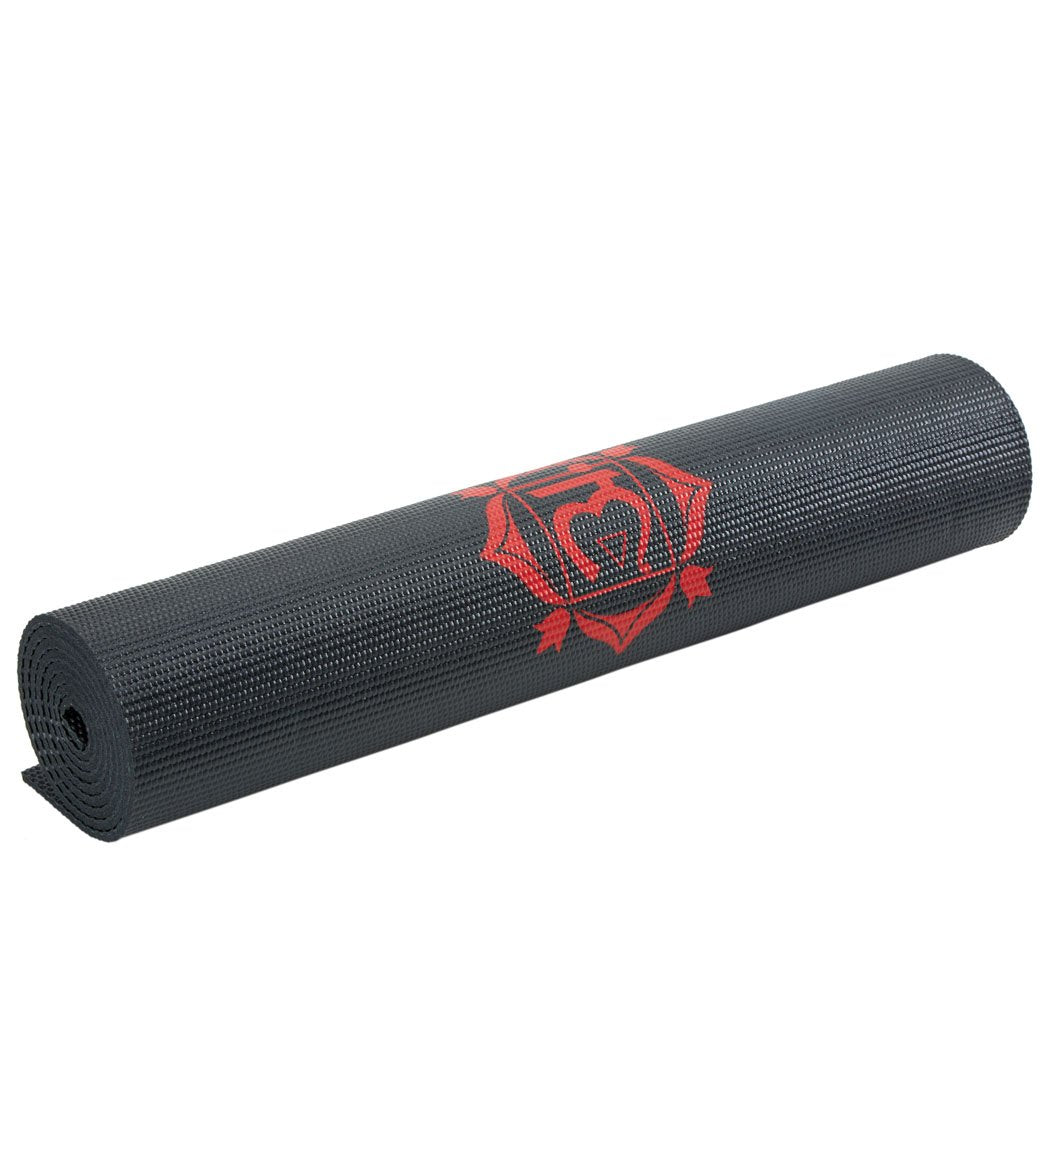 Gaiam Yoga Printed Cork Yoga Mat - 6 mm, 68x24”